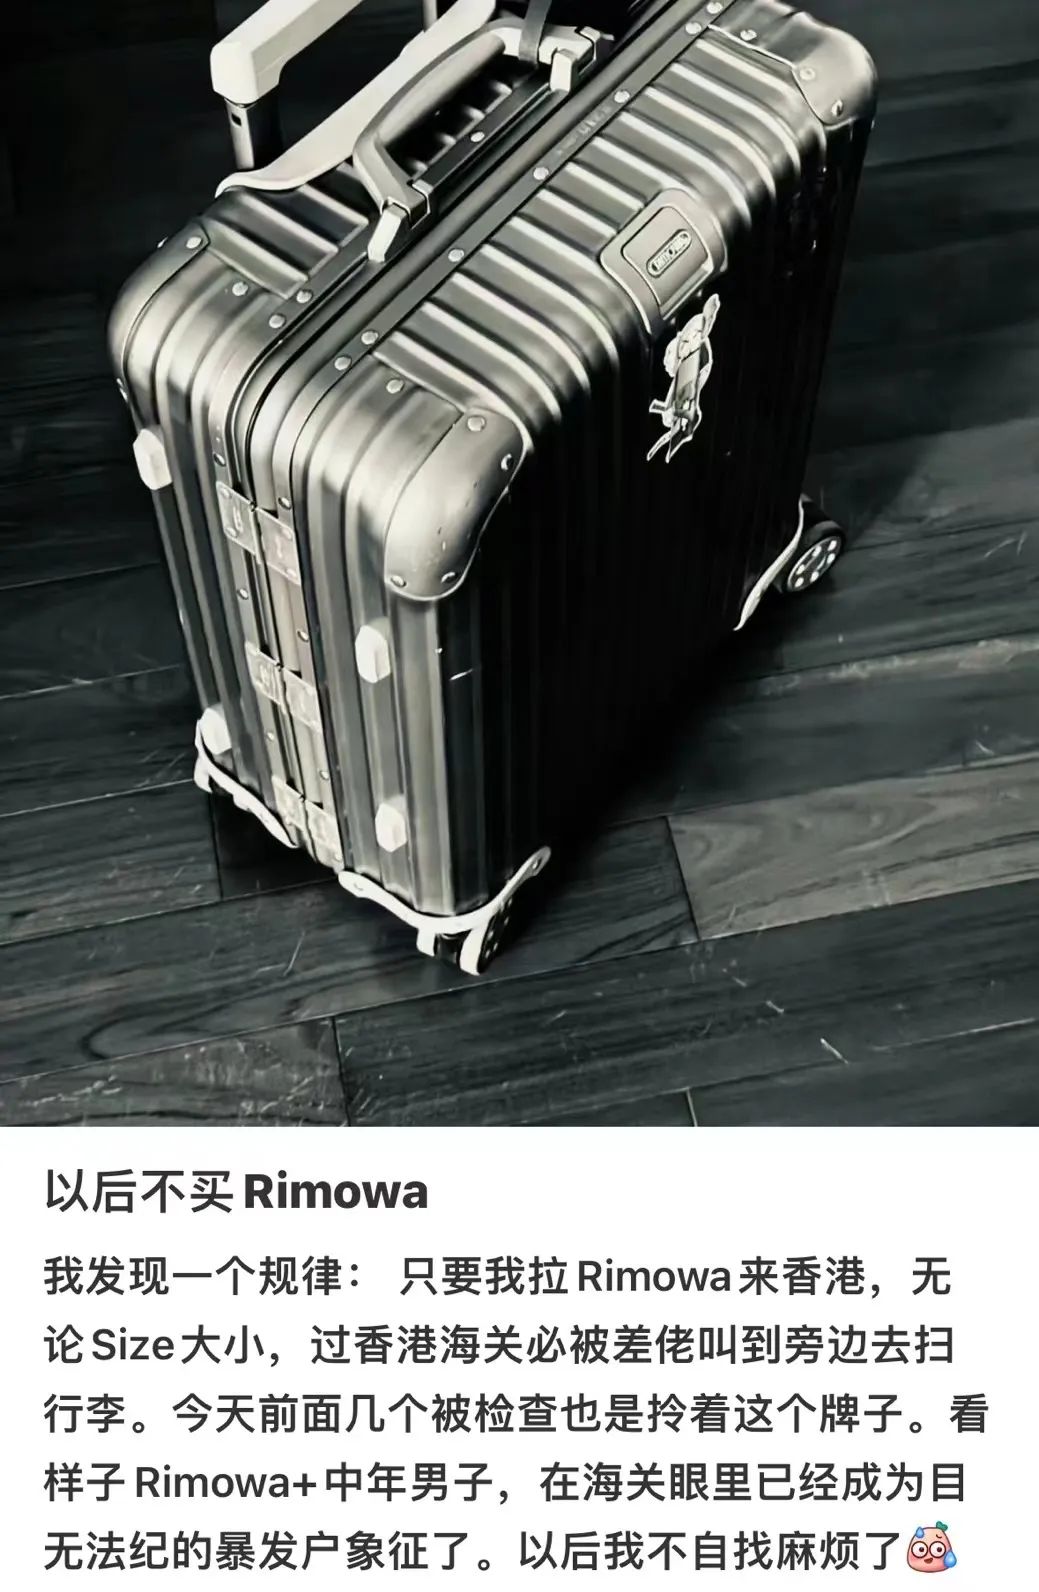 〓 拎rimowa很容易被误认为暴发户/图源：@小脸通黄